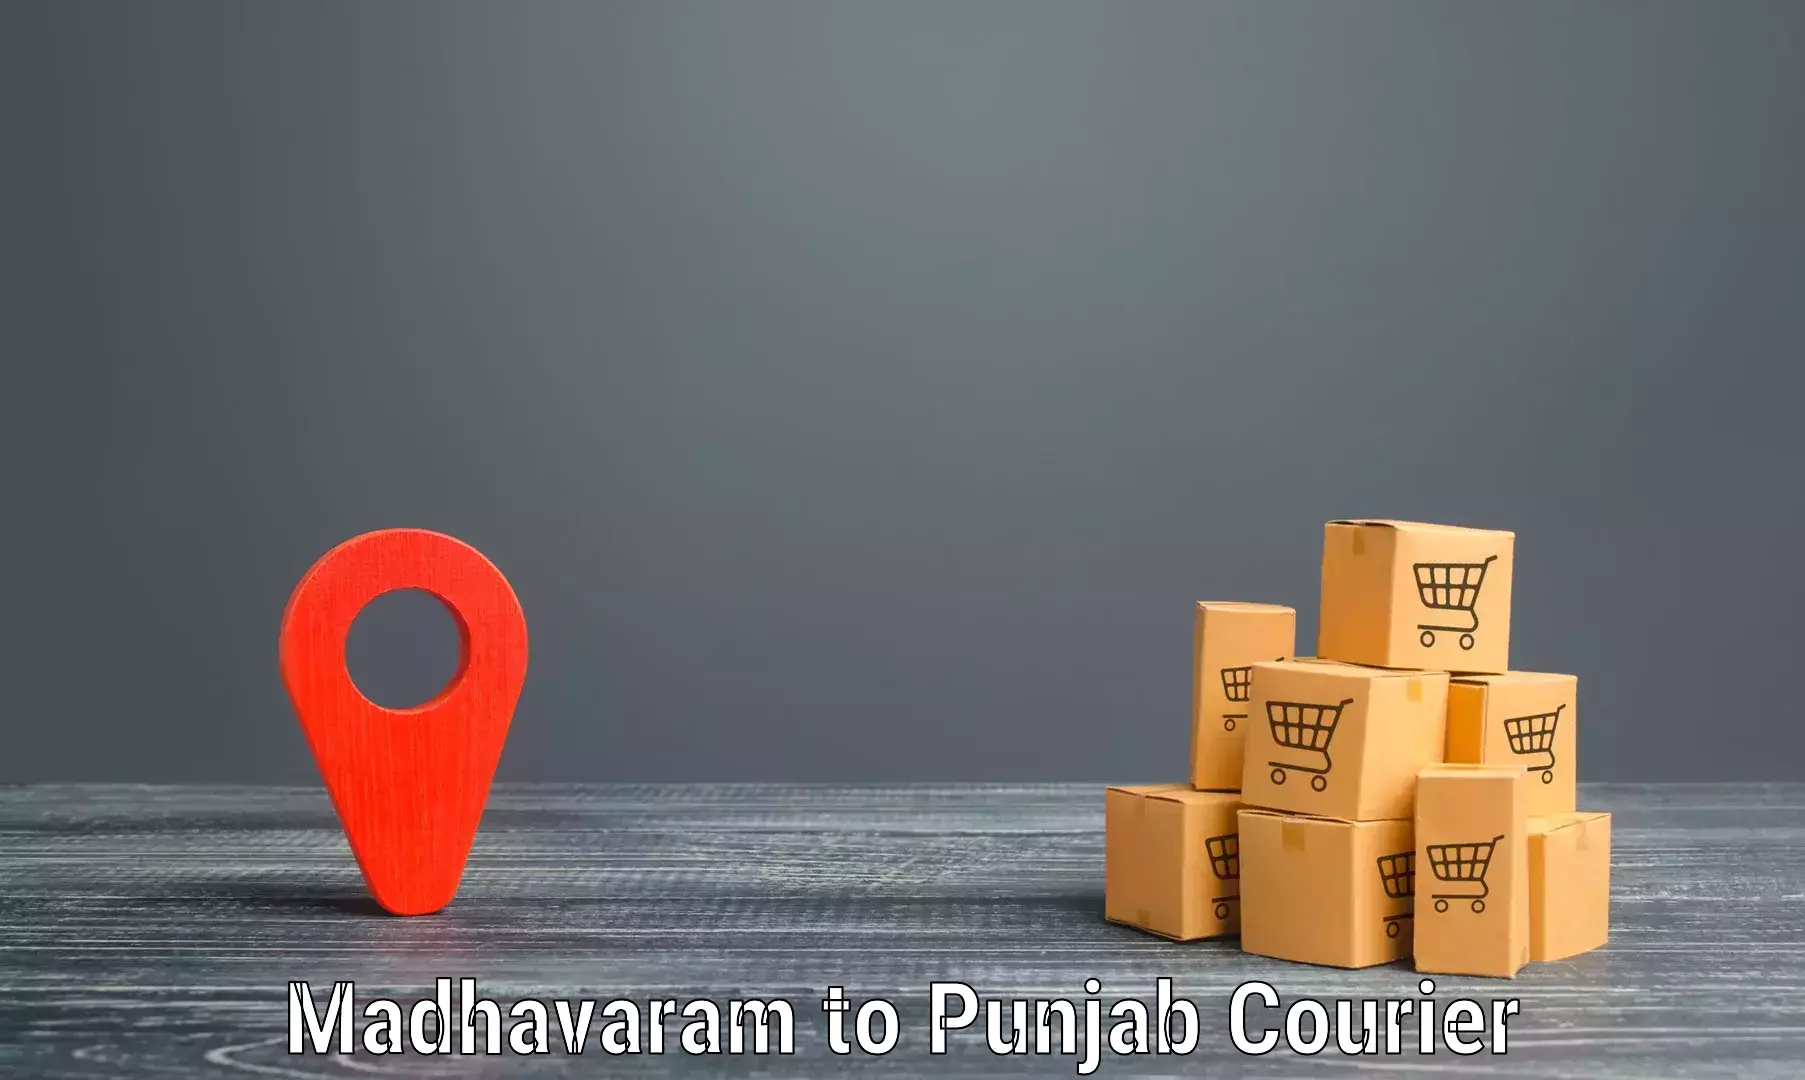 High-performance logistics Madhavaram to Fatehgarh Sahib